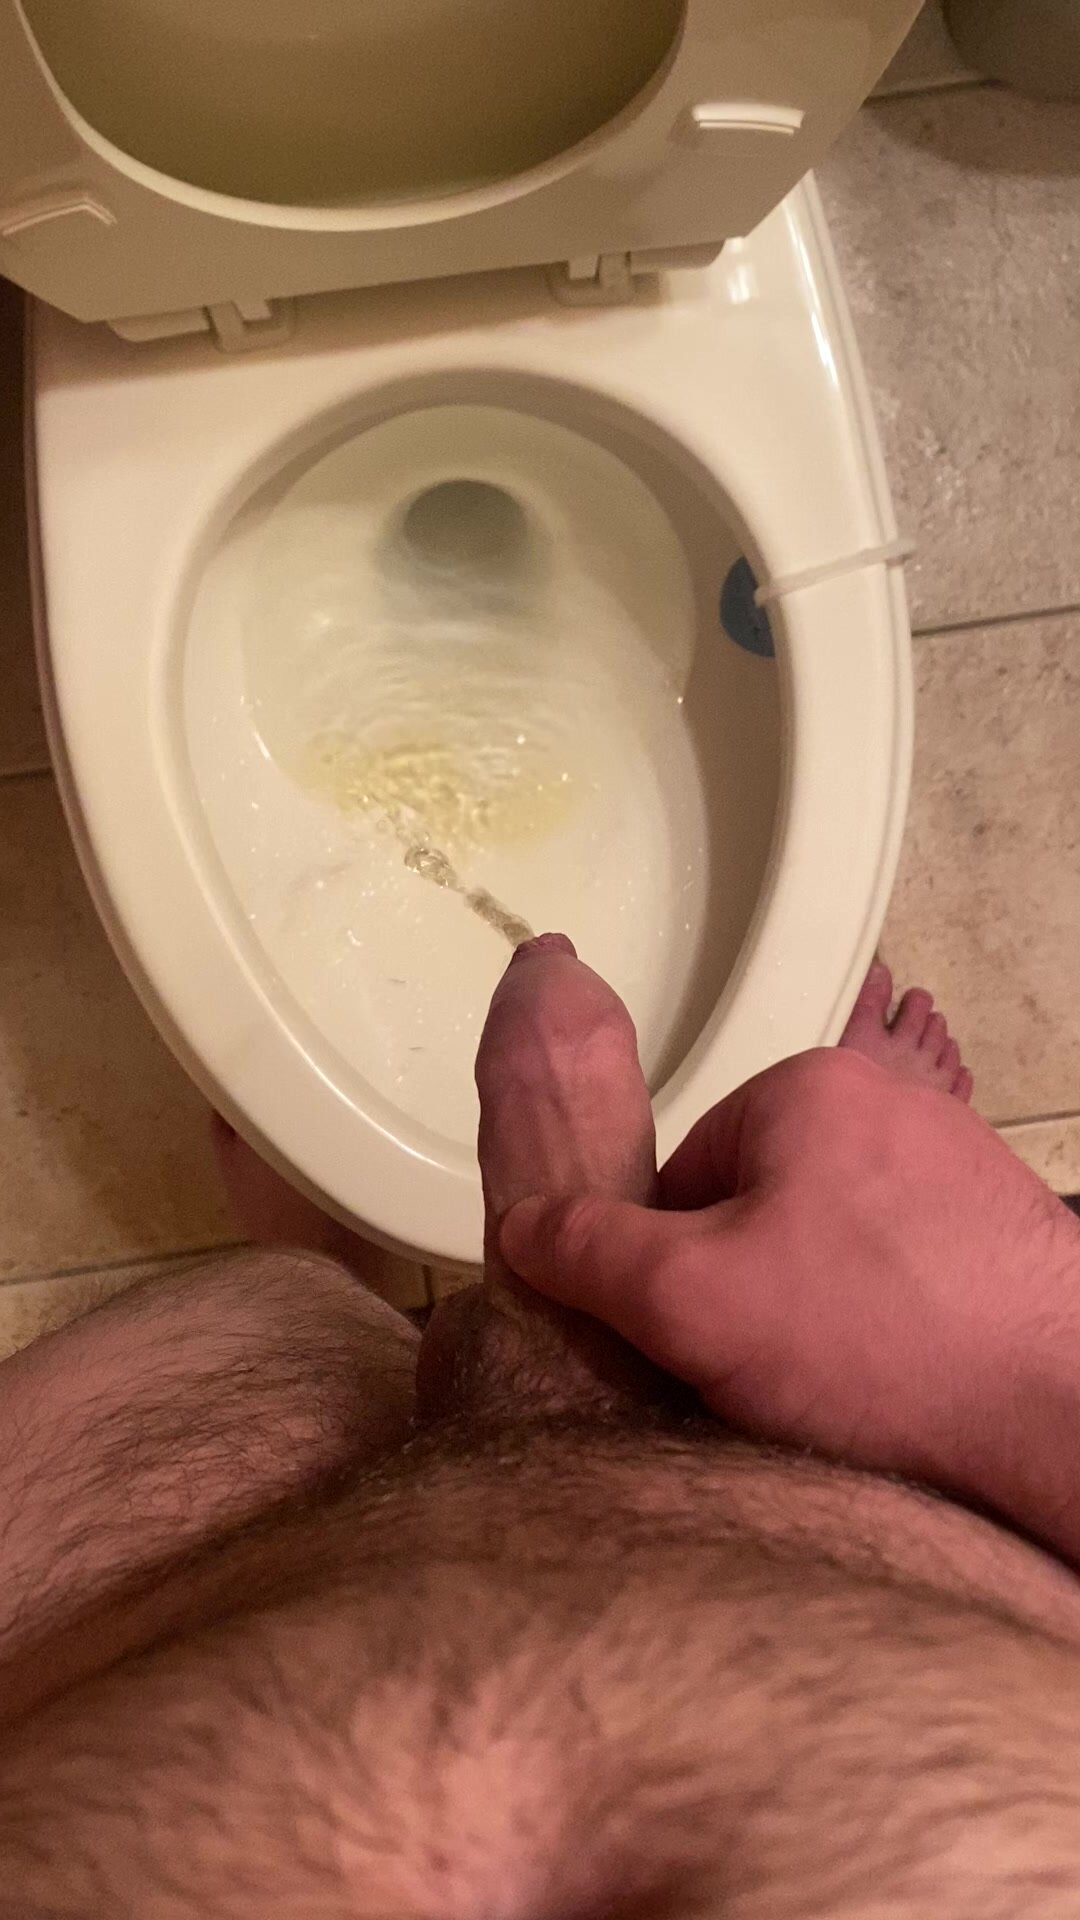 Long piss from uncut dick